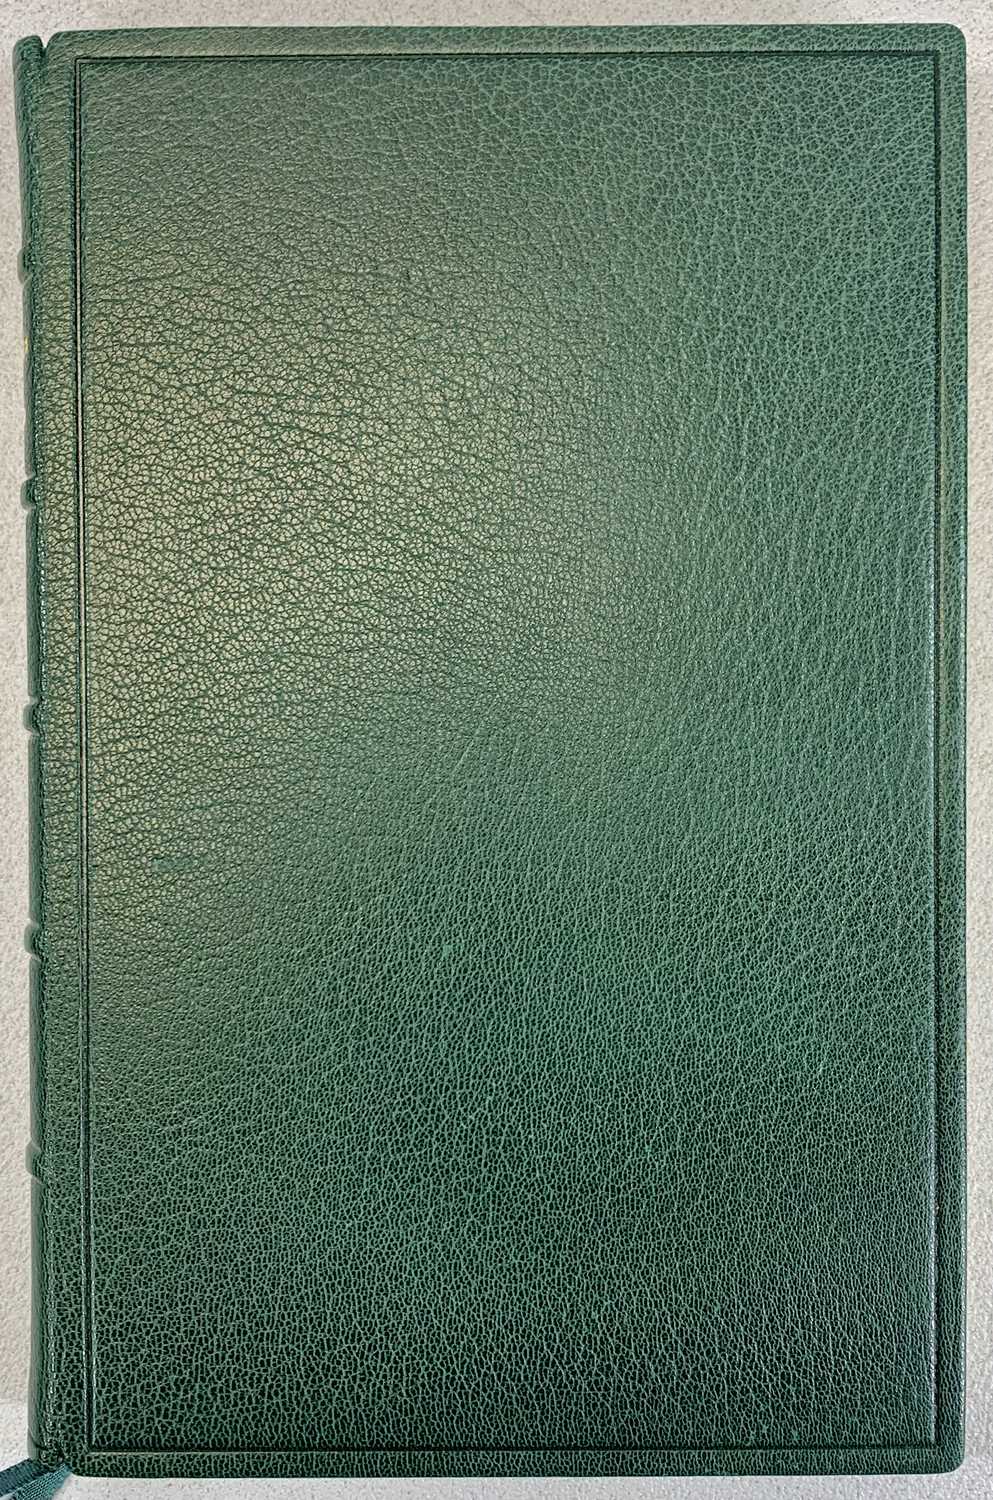 ELLIS WYNNE - GWELEDIGAETHAU A BARDD CWSG, limited edition 30/50, Cyfeillion Ellis Wynne, 1991, full - Image 3 of 3